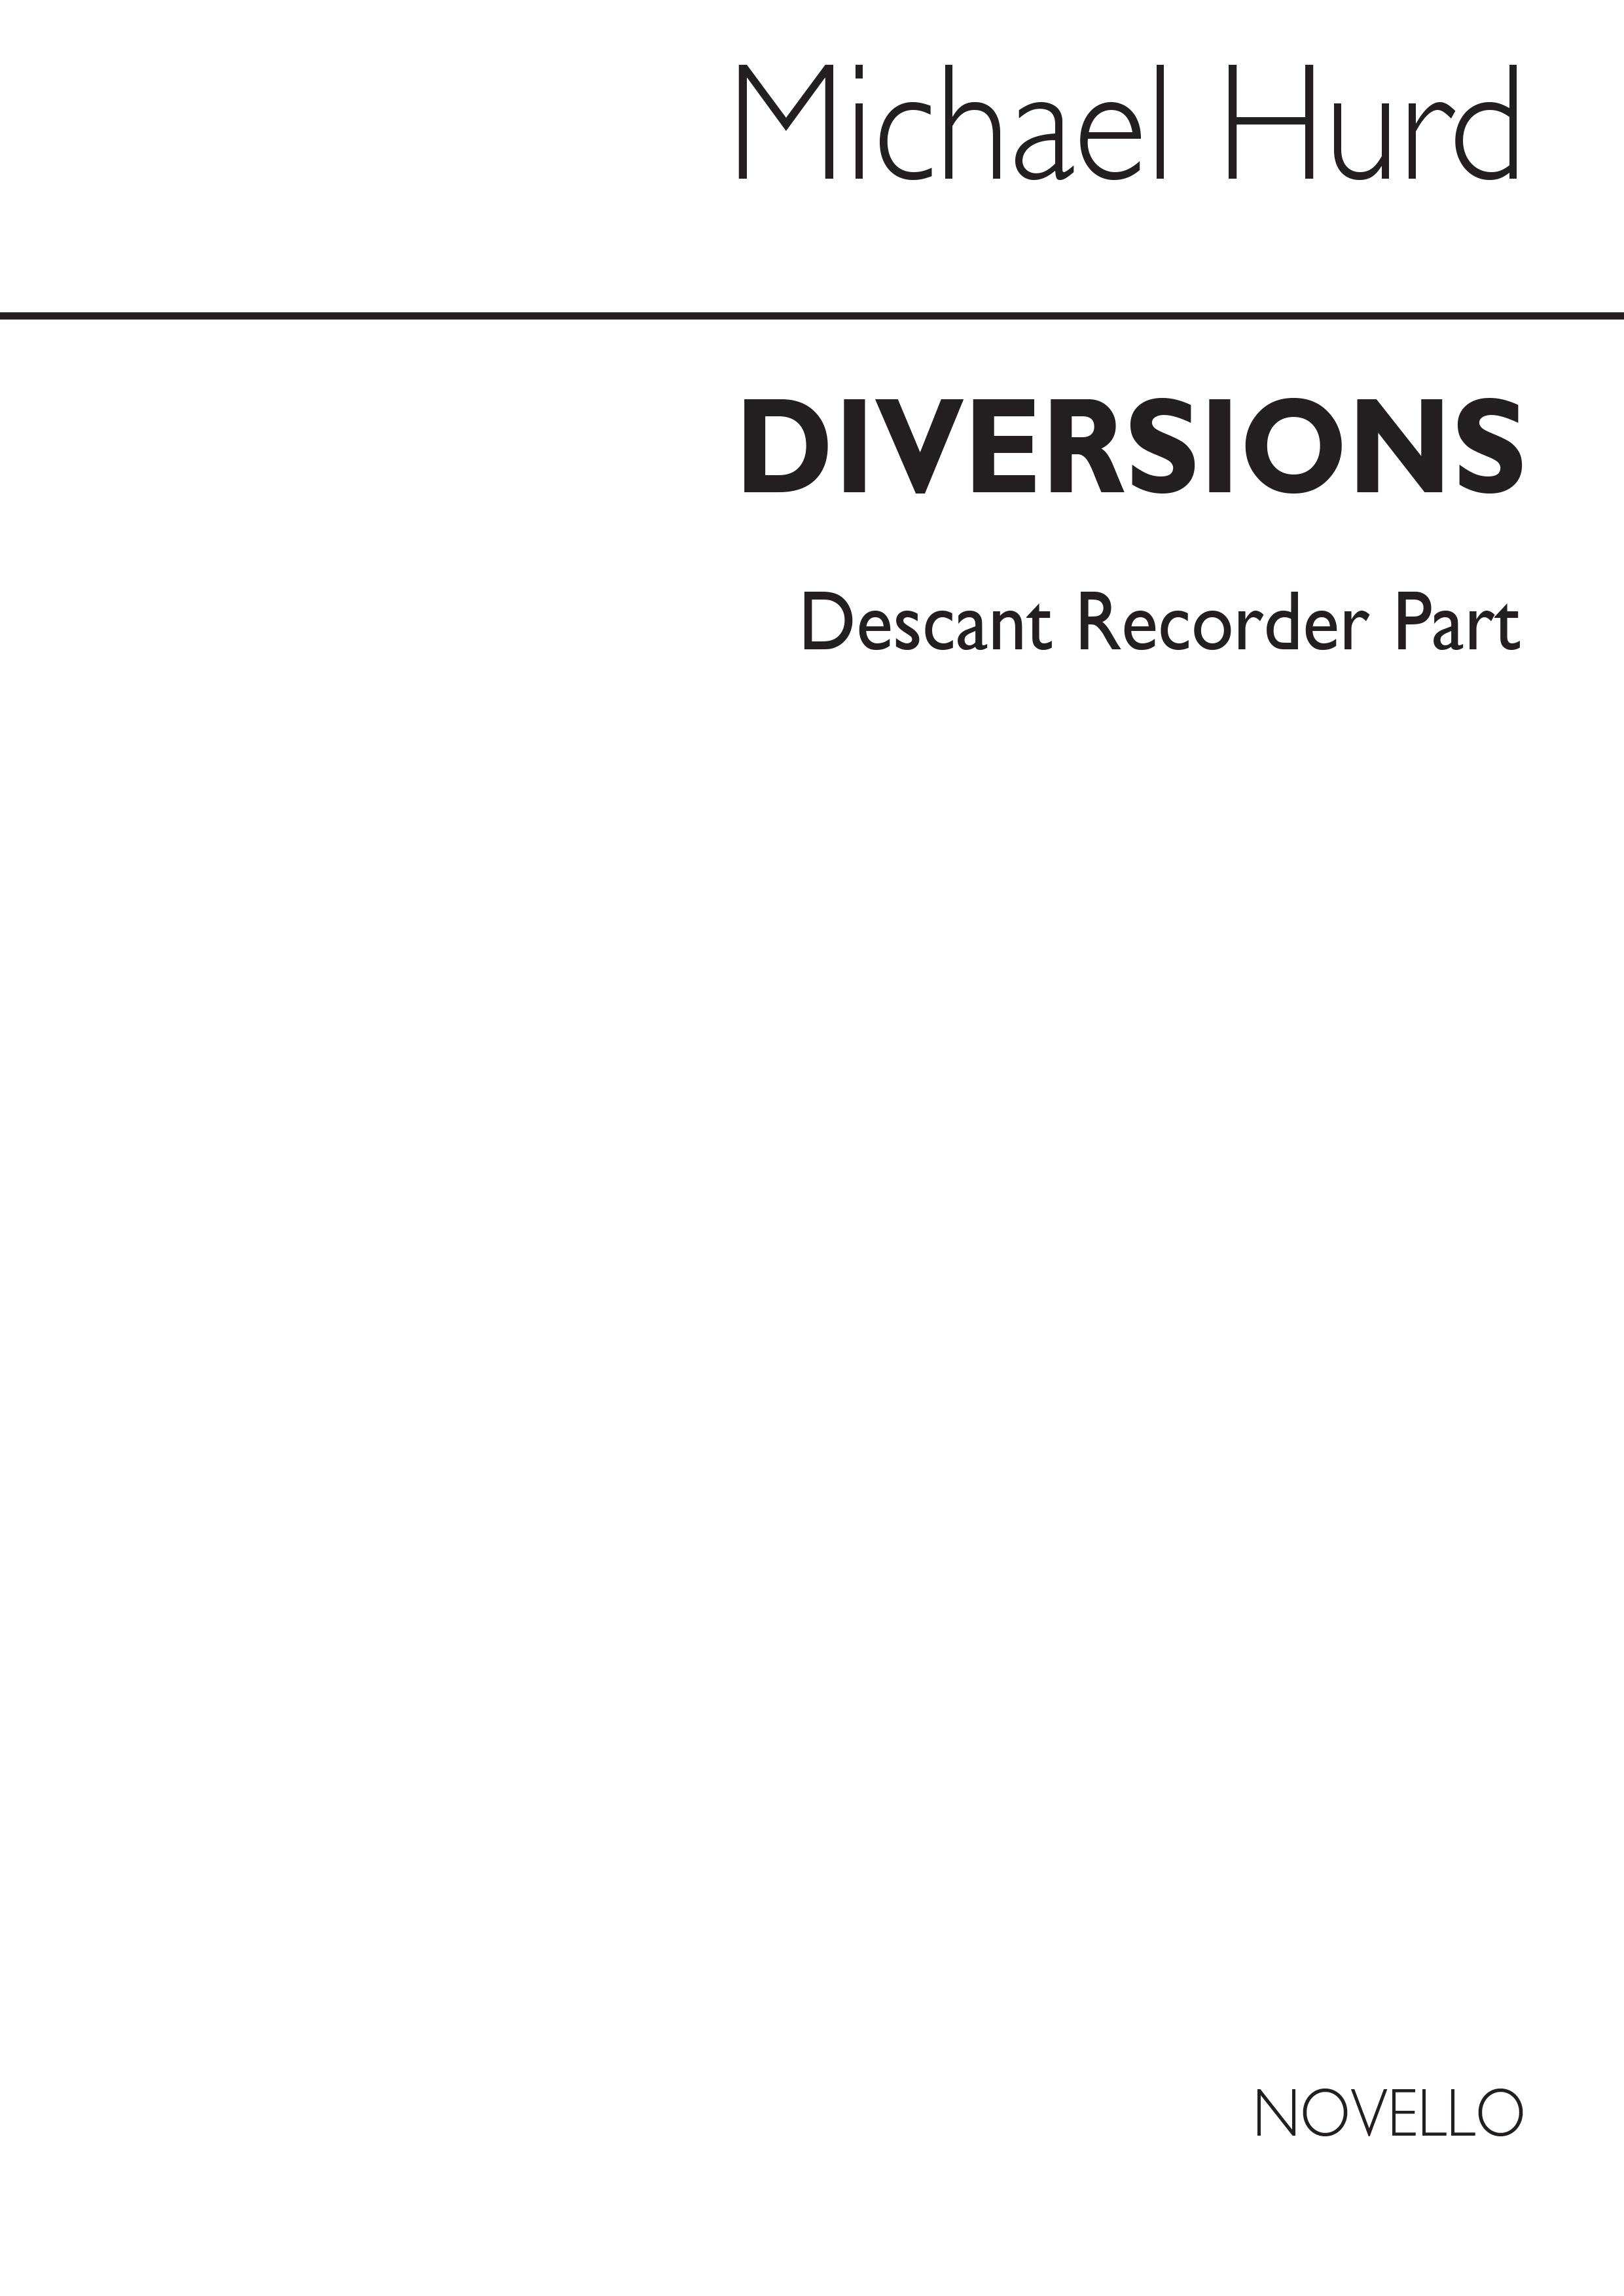 Hurd: Diversions Set 2 No.4 (Descant Recorder part)